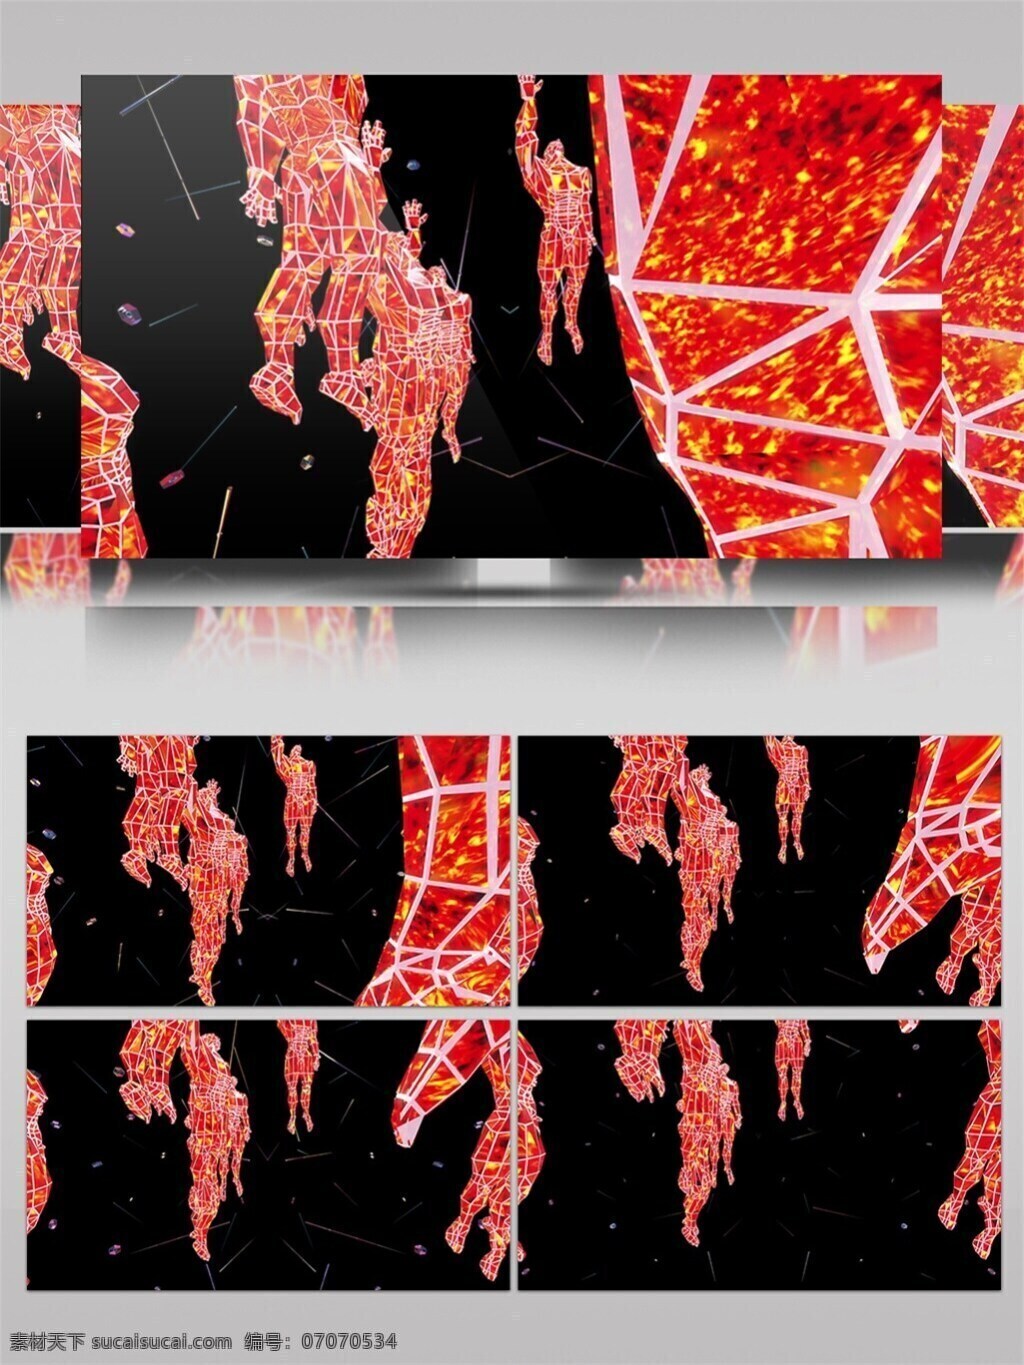 红光 岩浆 水晶 高清 视频 光斑散射 光束 红色 视觉享受 手机壁纸